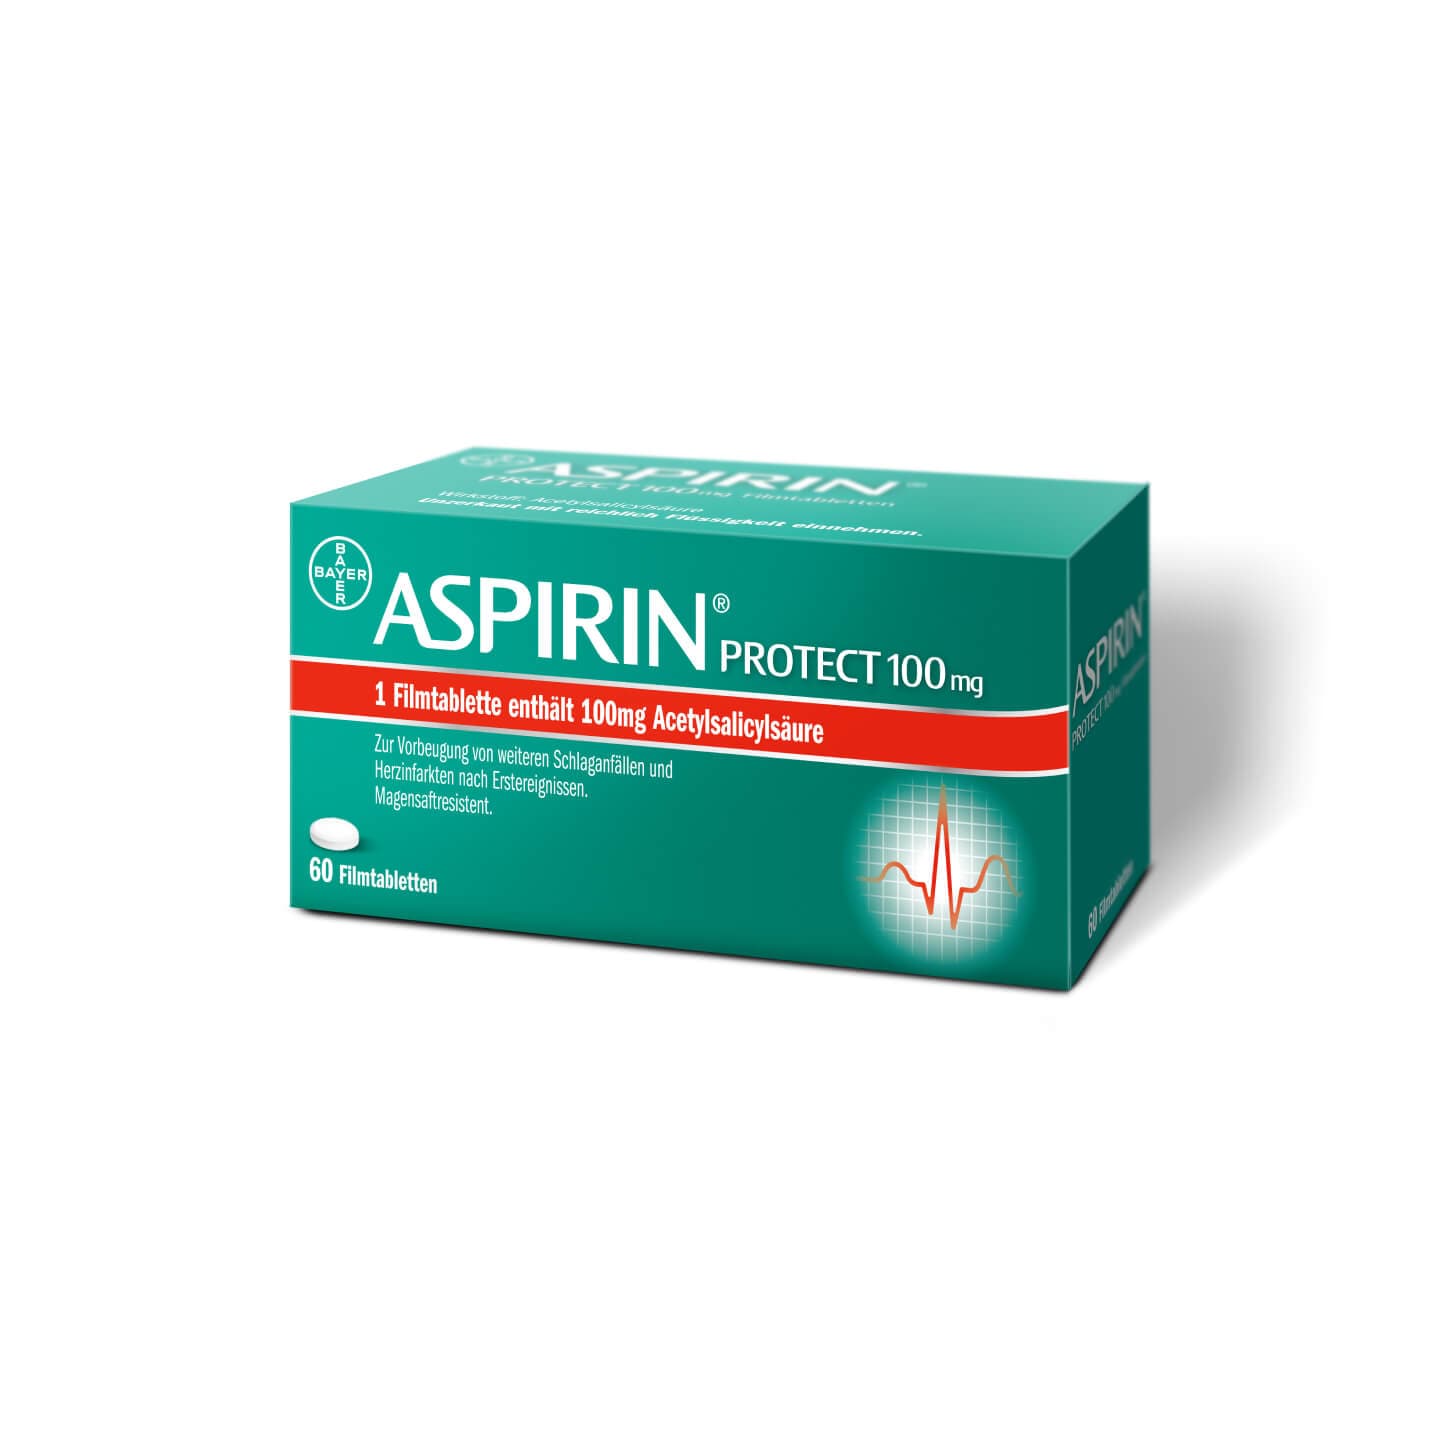 Aspirin® Protect